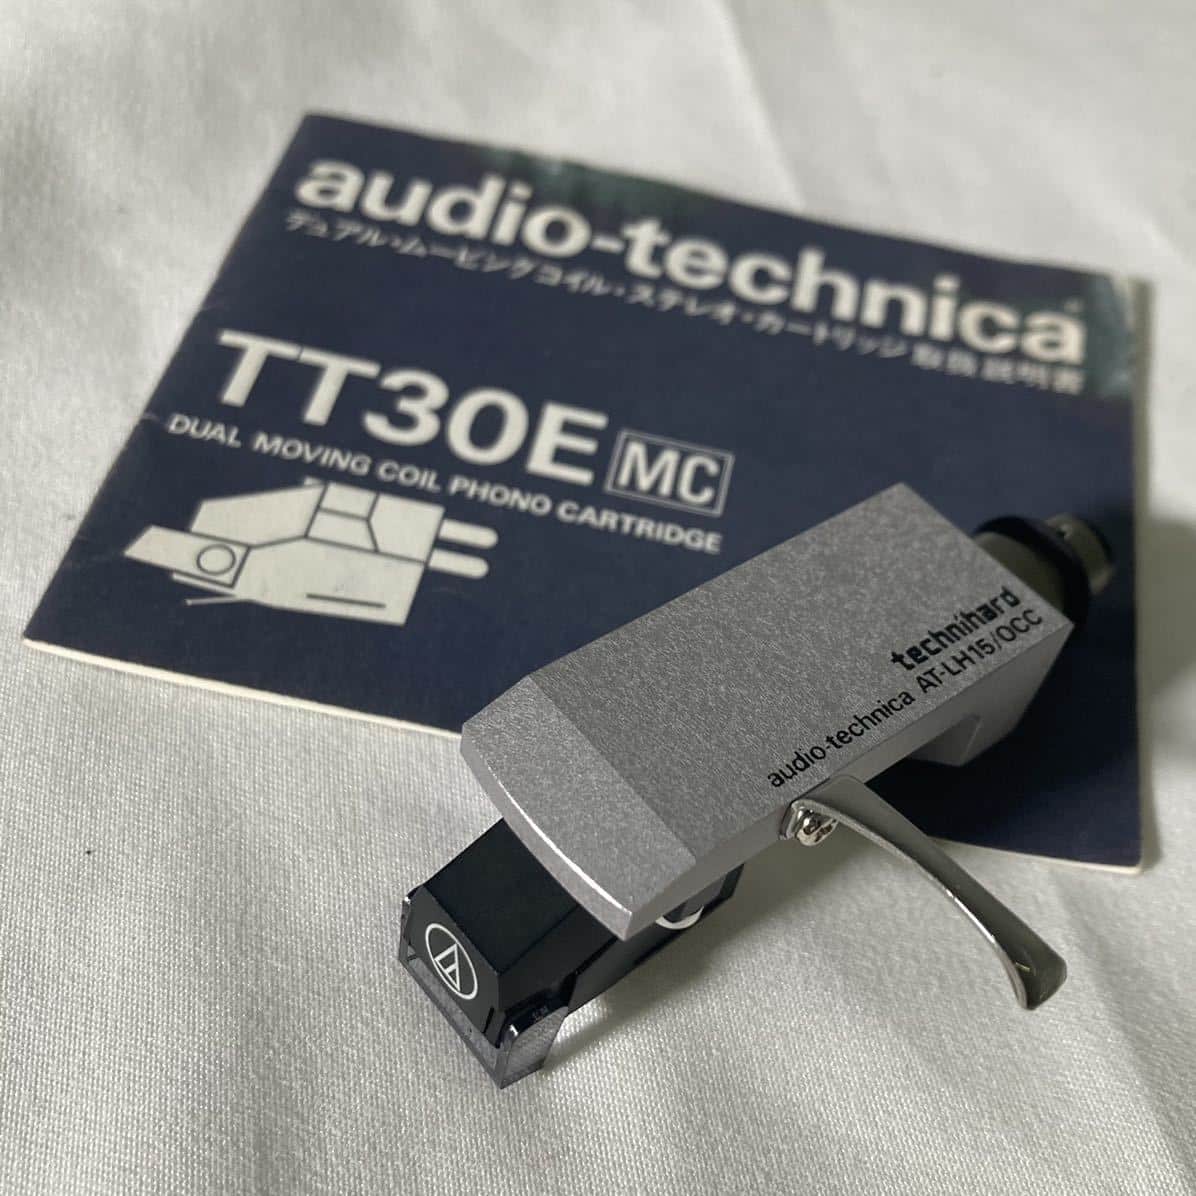 audio-technica TT-30E mcカートリッジ AT-LH15 - 横浜レコード